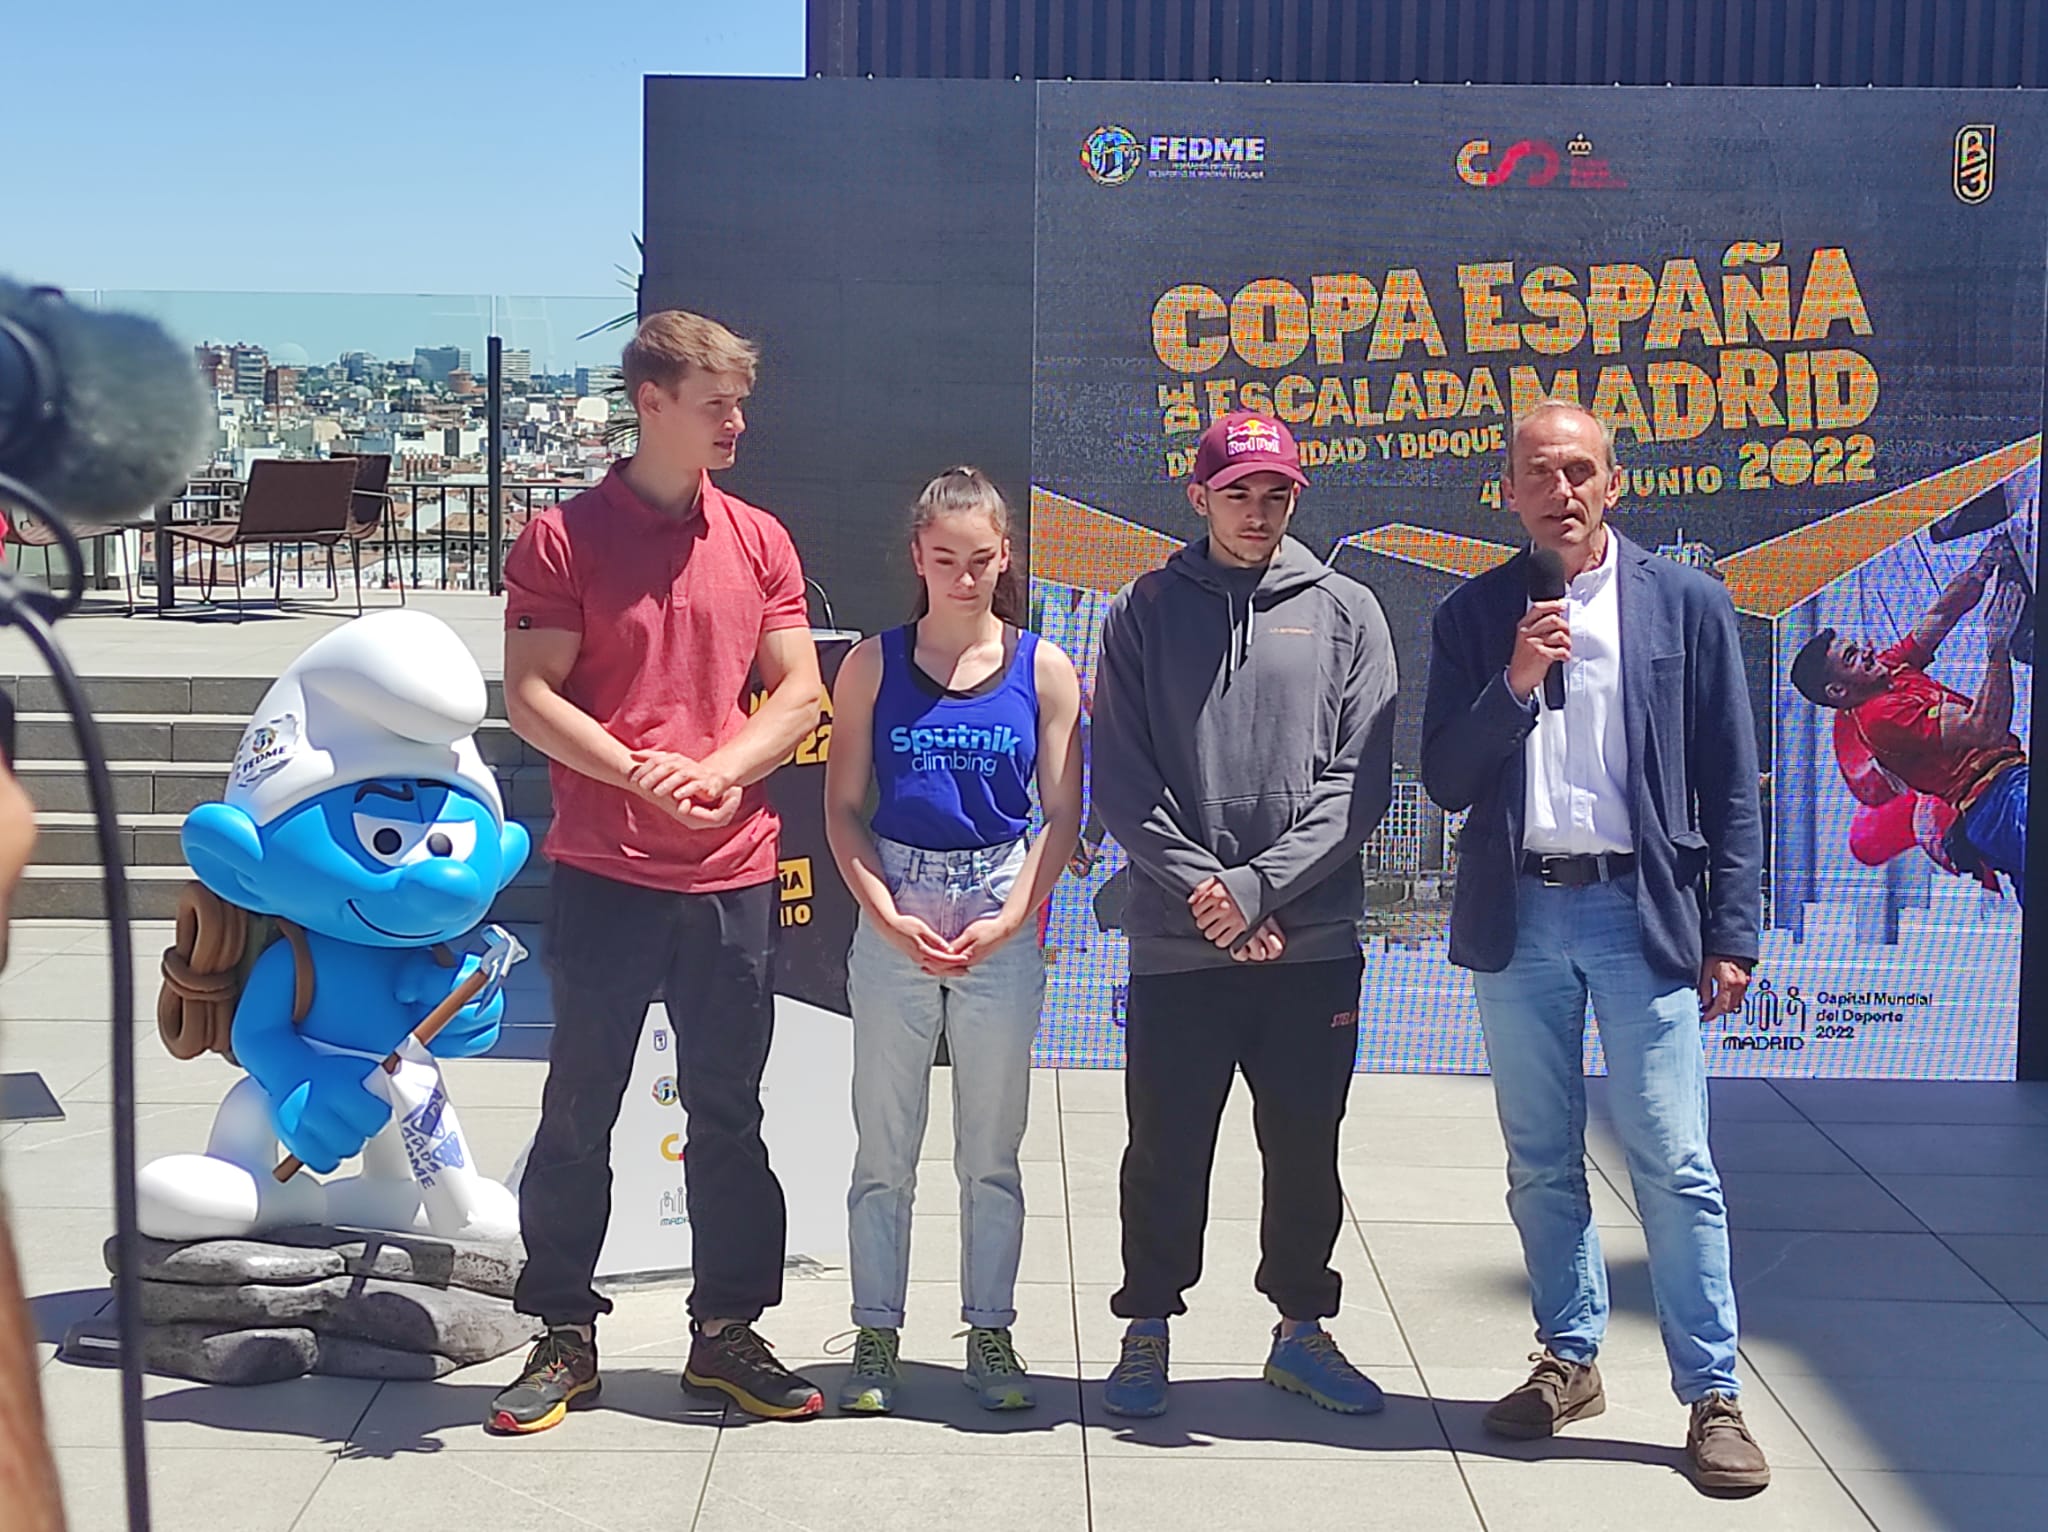 Presentación de la Copa de España de escalada en Madrid